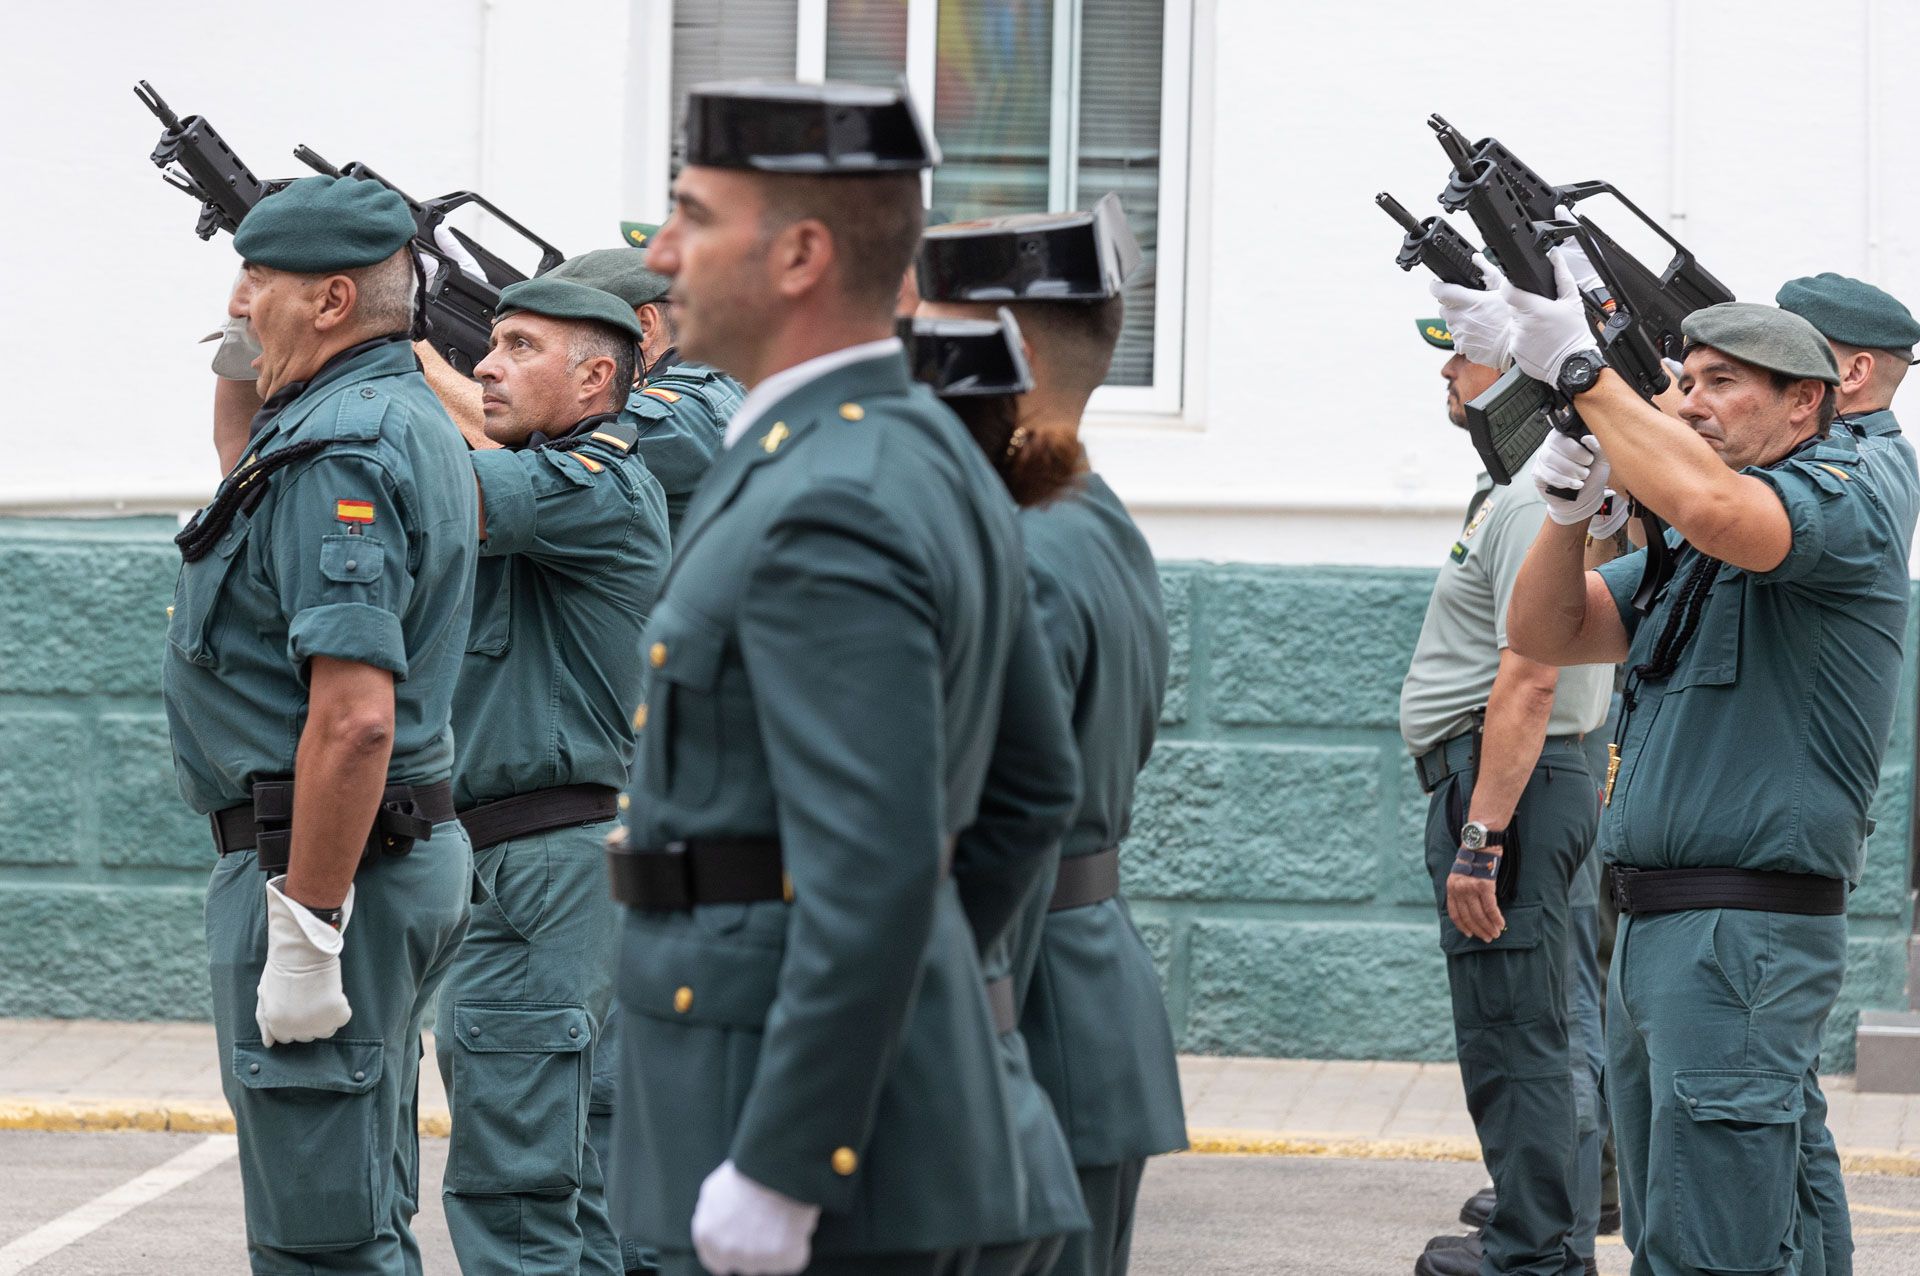 La Comandacia de Alicante celebra el 179 Aniversario de la creación de la Guardia Civil